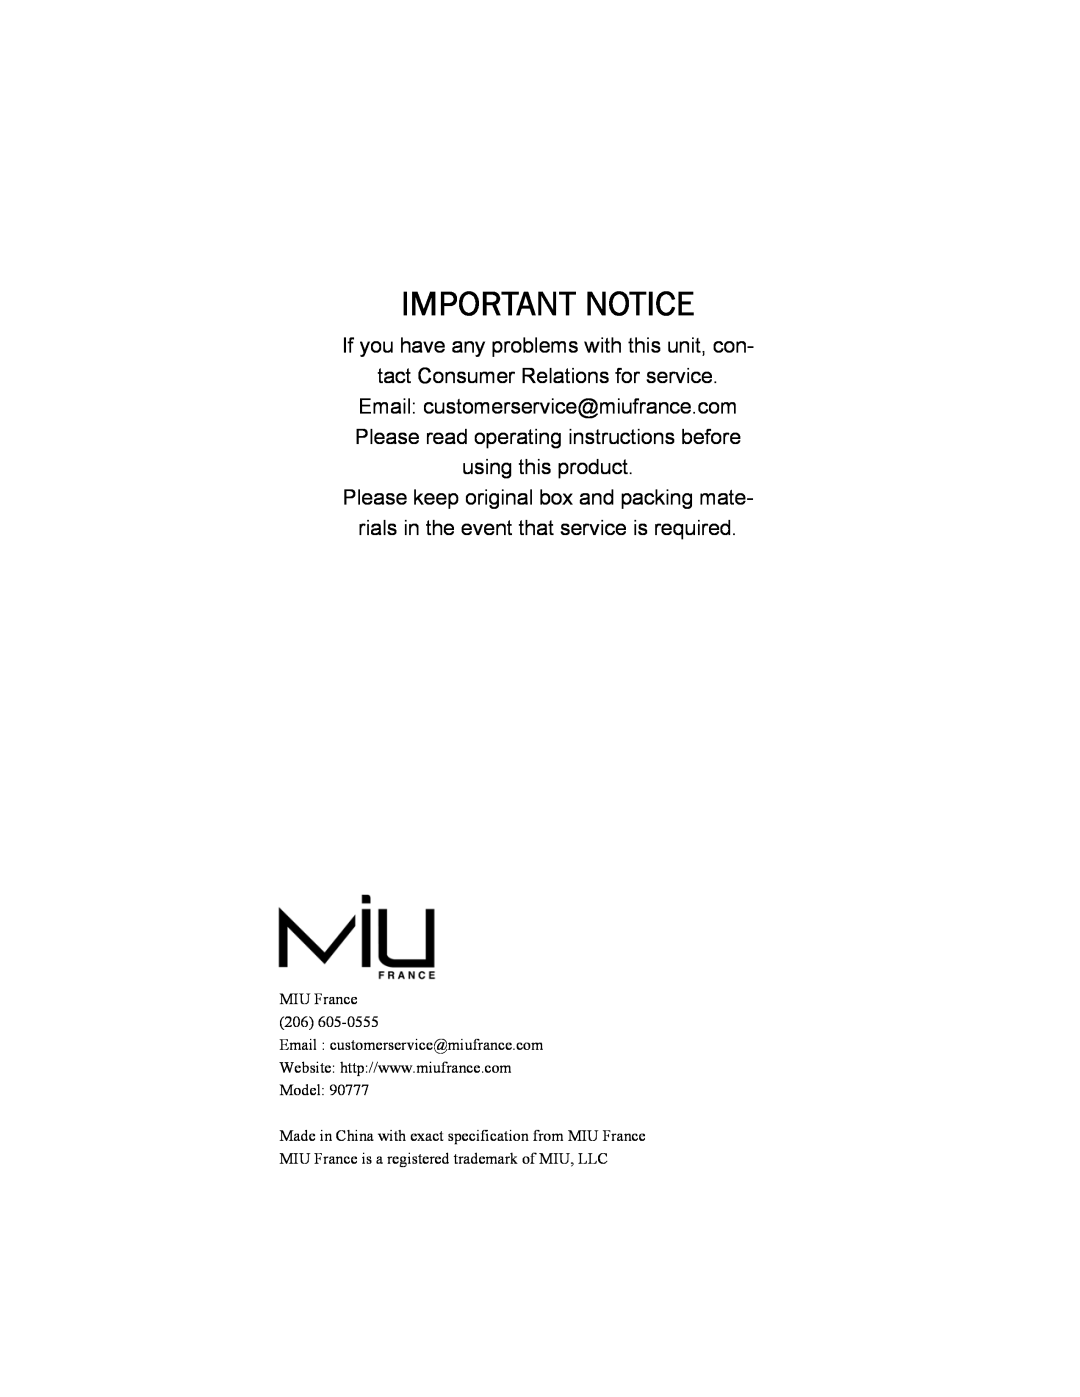 MIU France 90777 manual Important Notice 